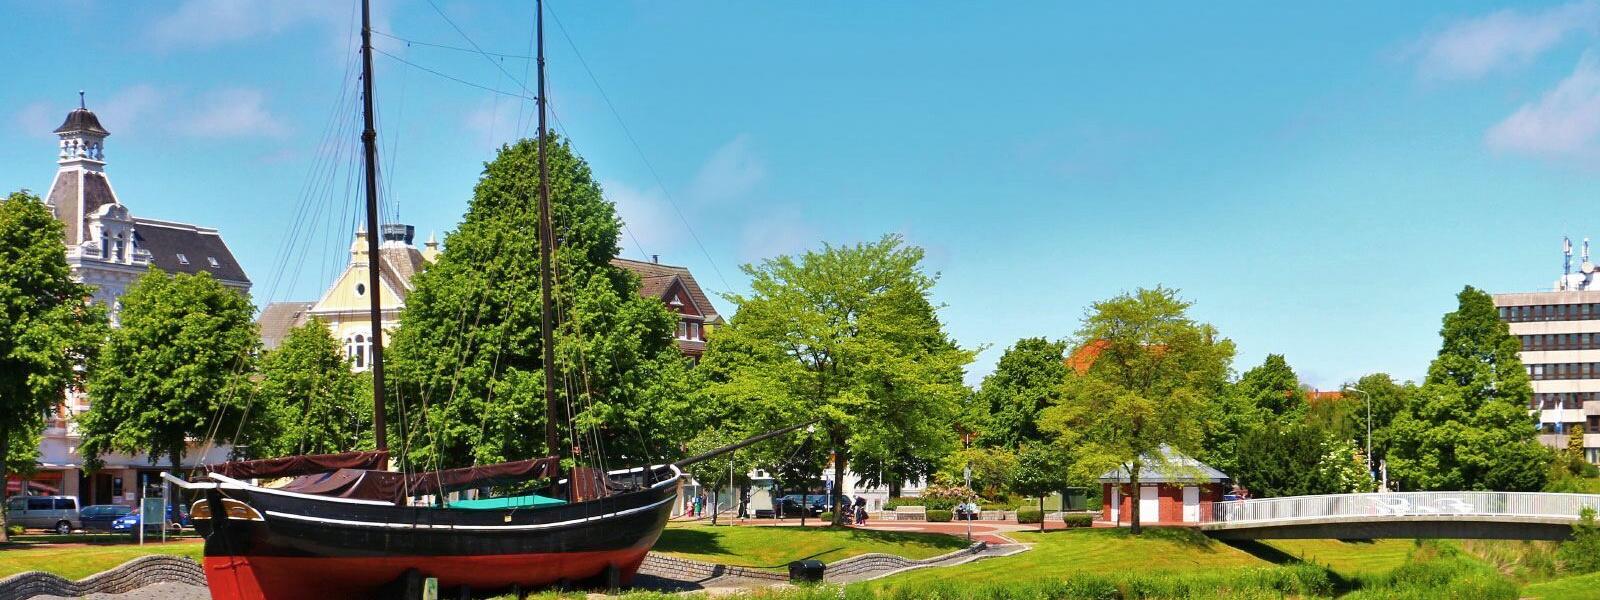 Ferienhäuser und Ferienwohnungen in Cuxhaven - e-domizil